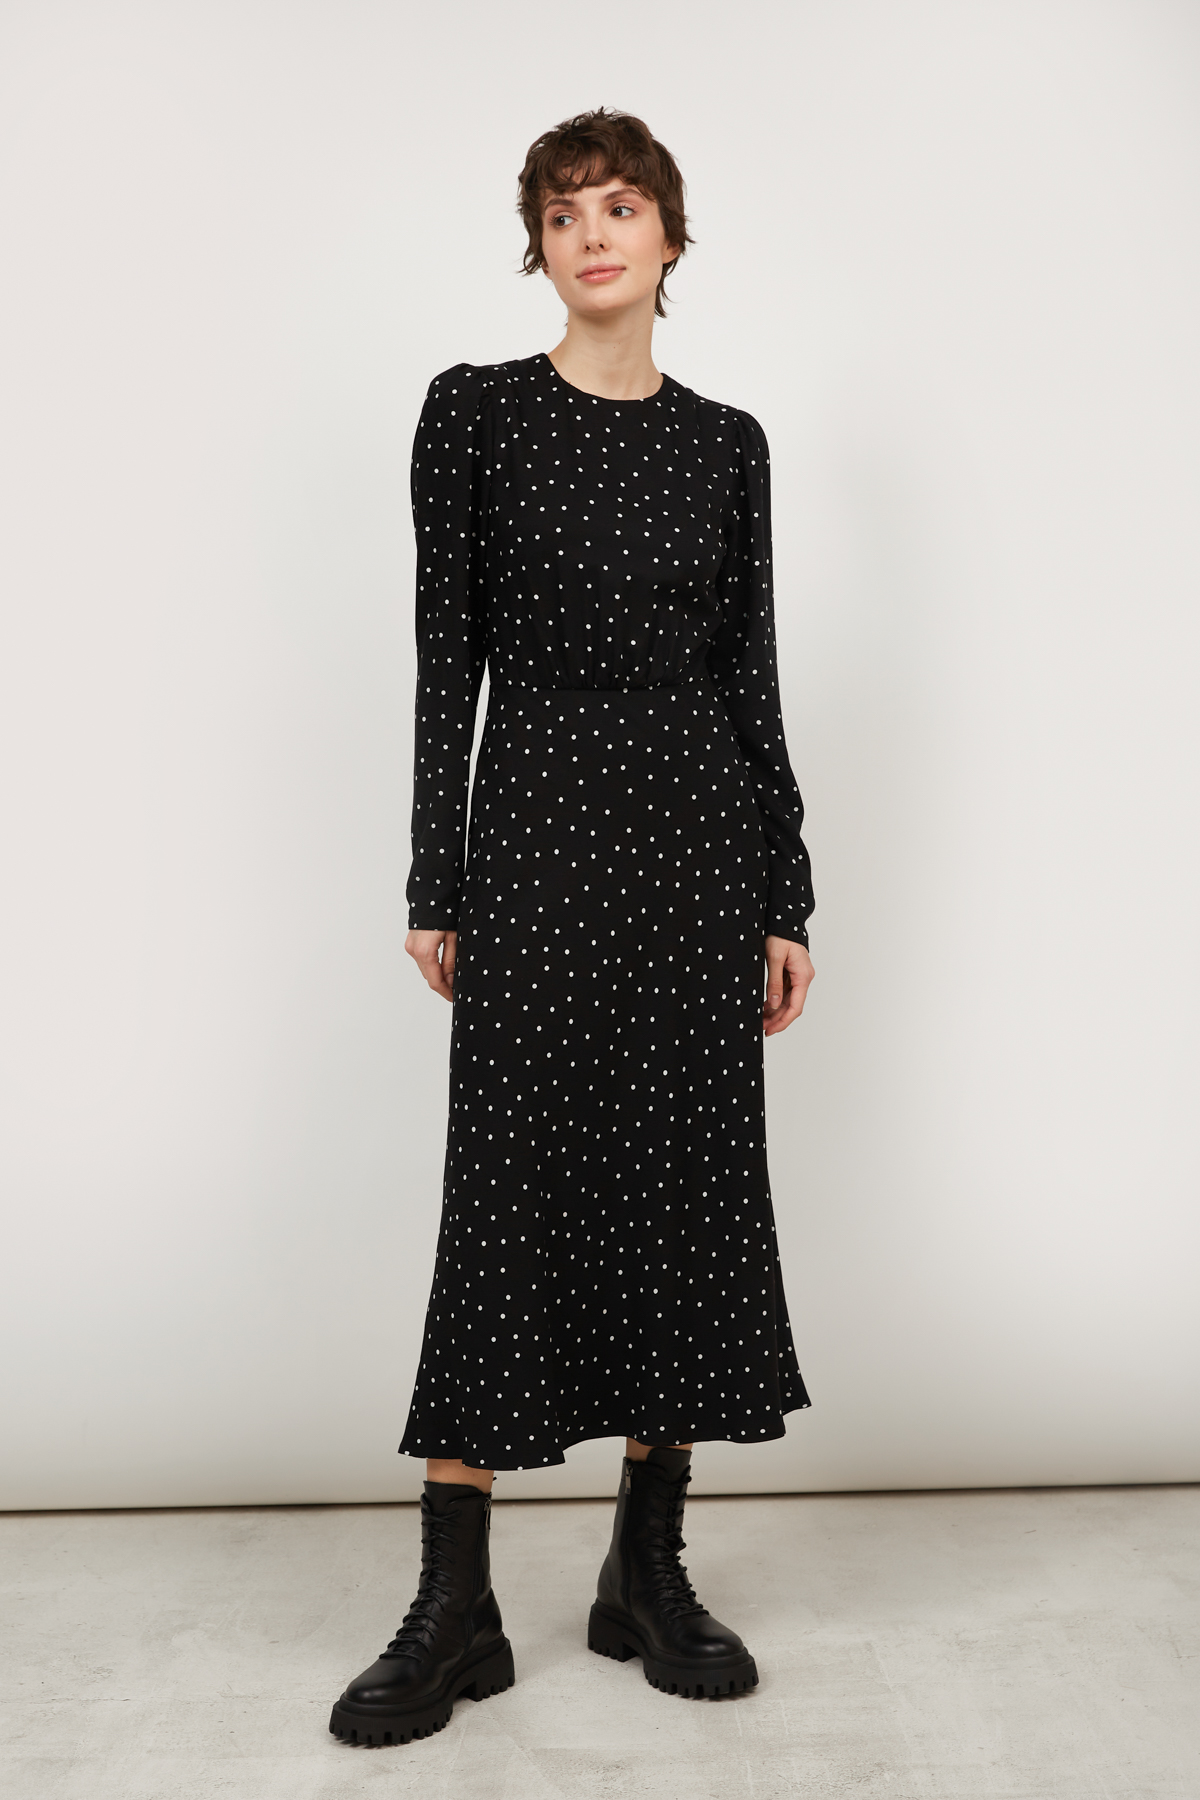 Black viscose midi dress in white polka dots print, photo 2